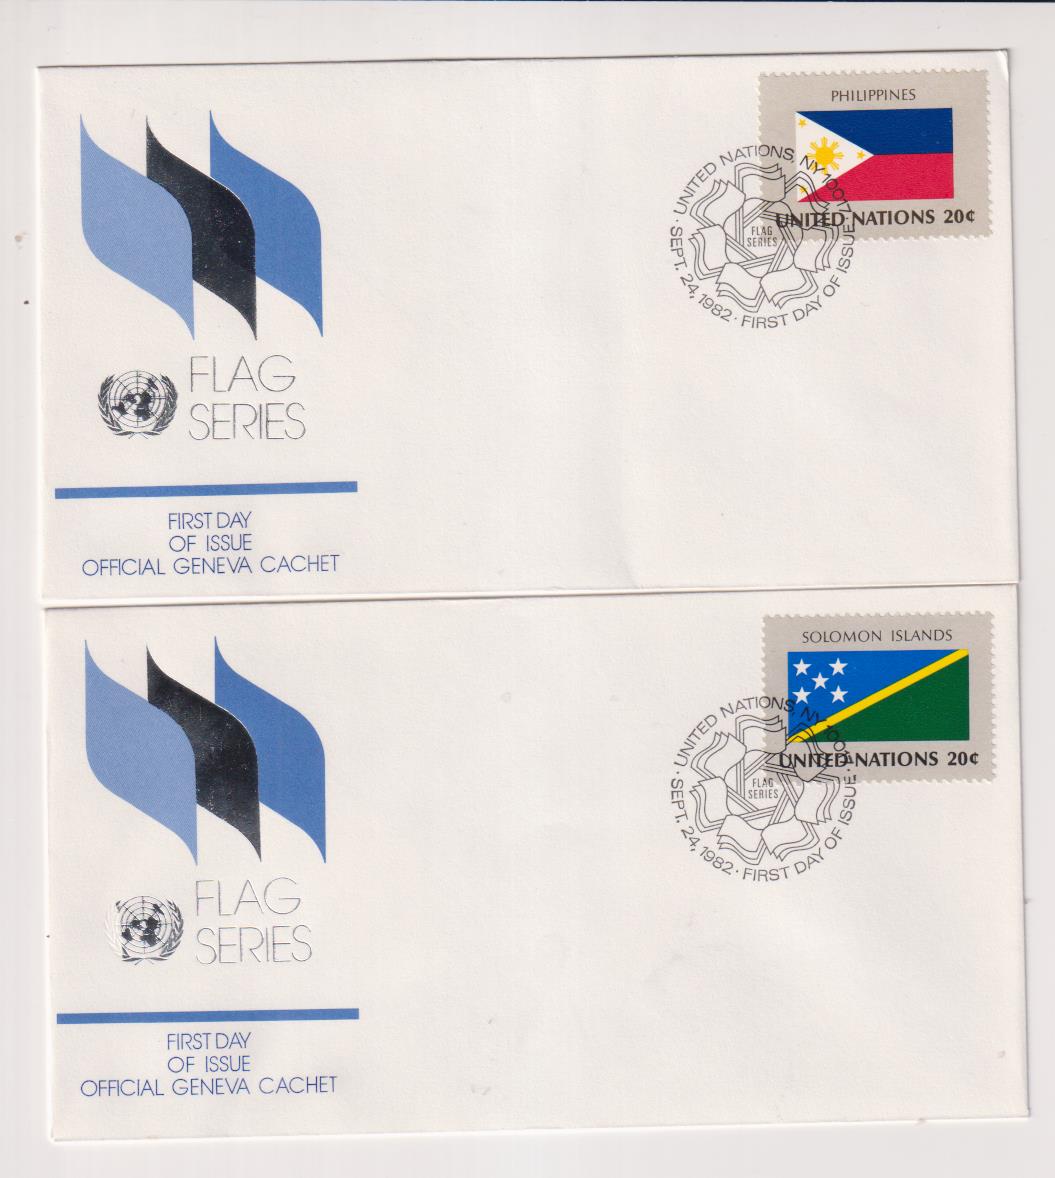 Naciones Unidas. Serie Banderas. 2 Sobres Primer Día: Filipinas y Islas Salomón 1982